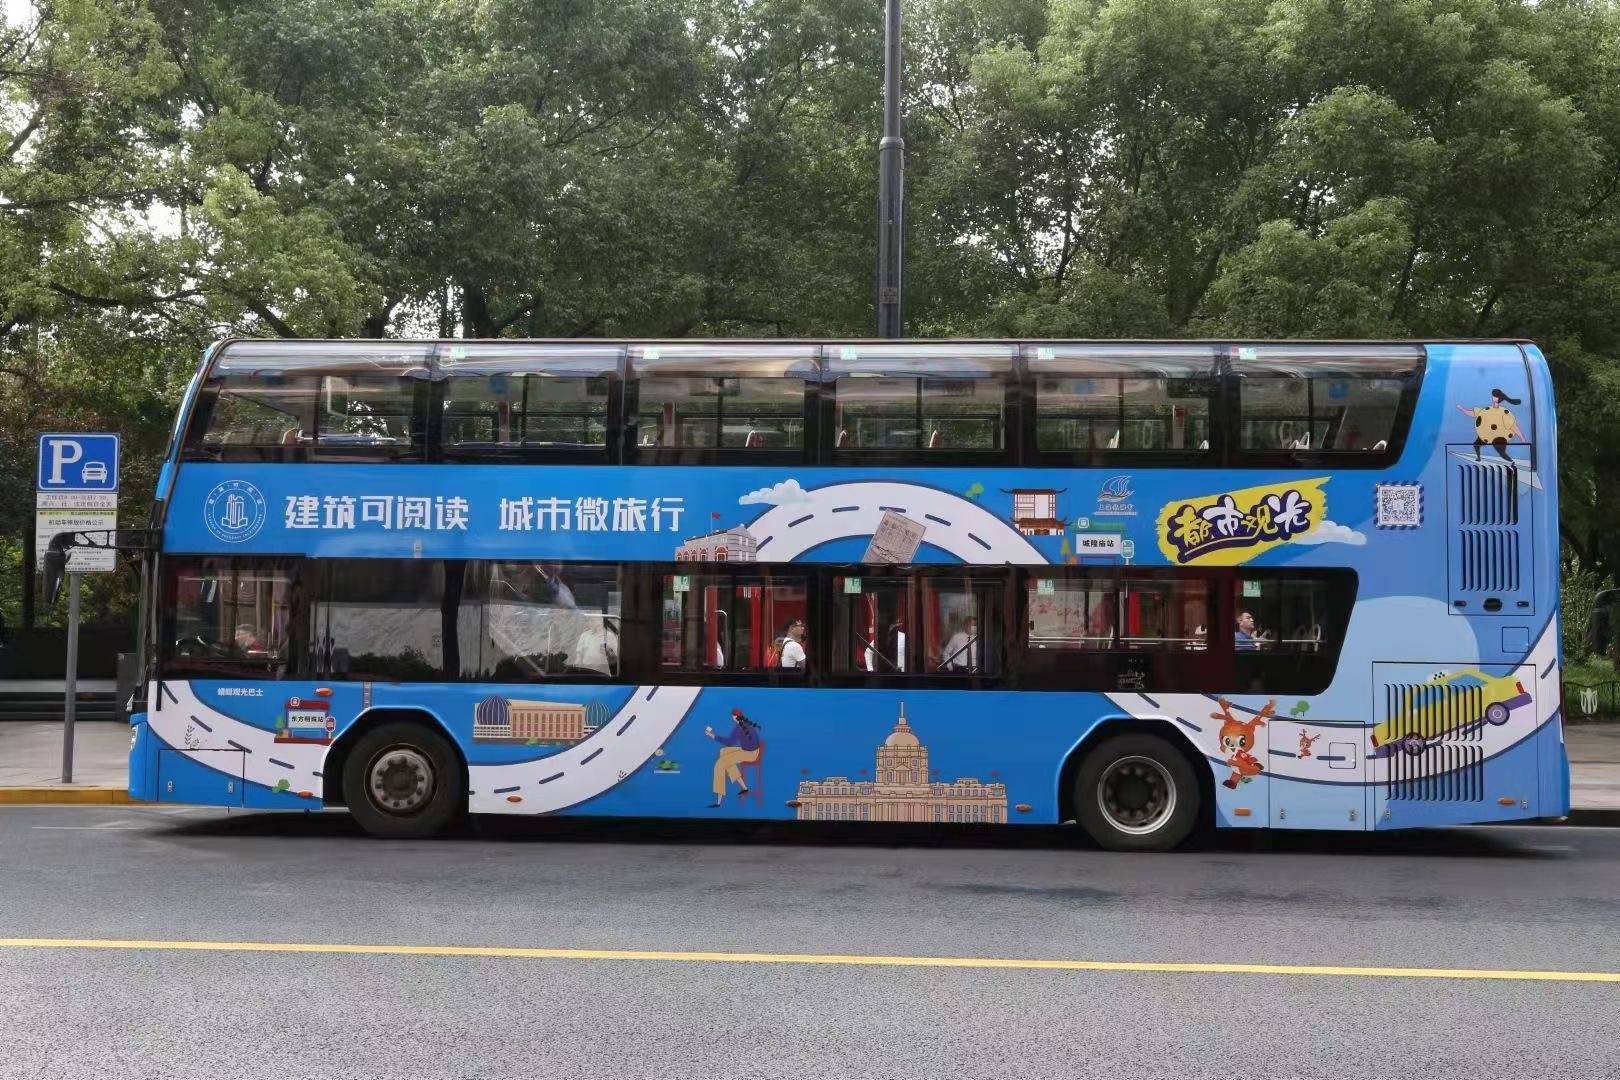 半价门票、微游巴士、海派房间……上海旅游节等你来